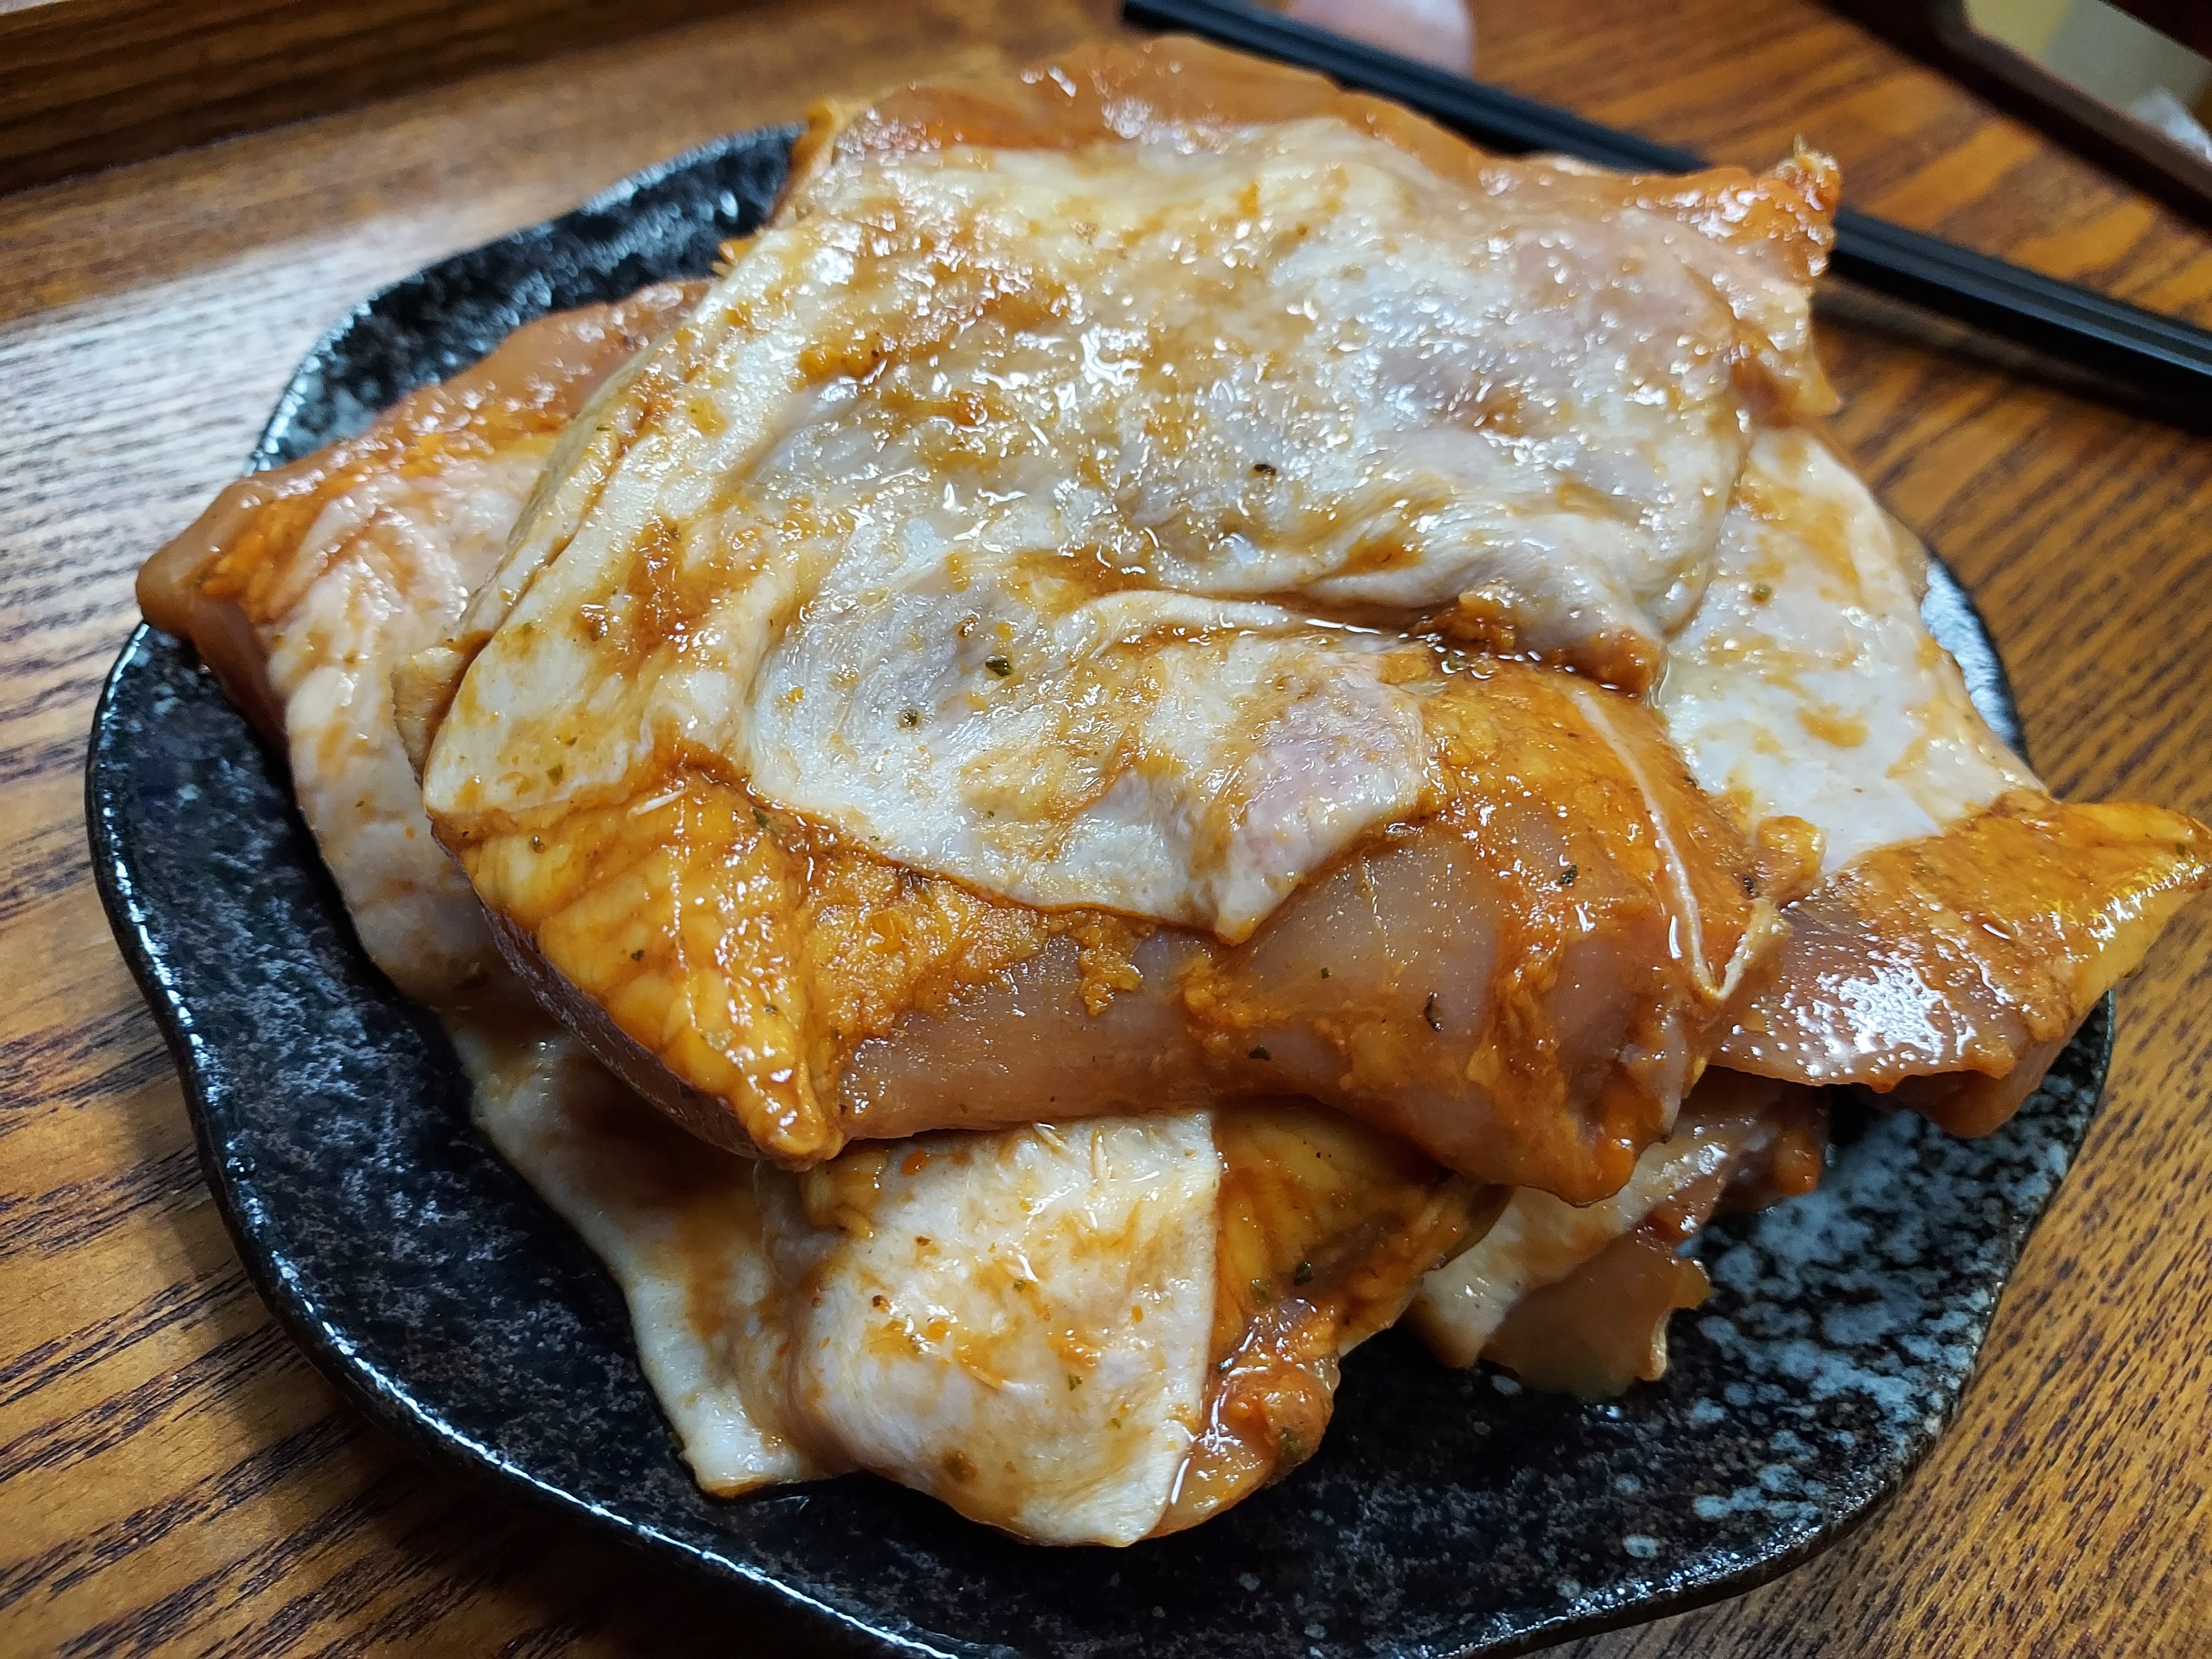 迷迭香草雞腿肉(去骨)(5入)【利津食品行】迷迭香 雞腿肉 烤肉 生鮮 醃漬